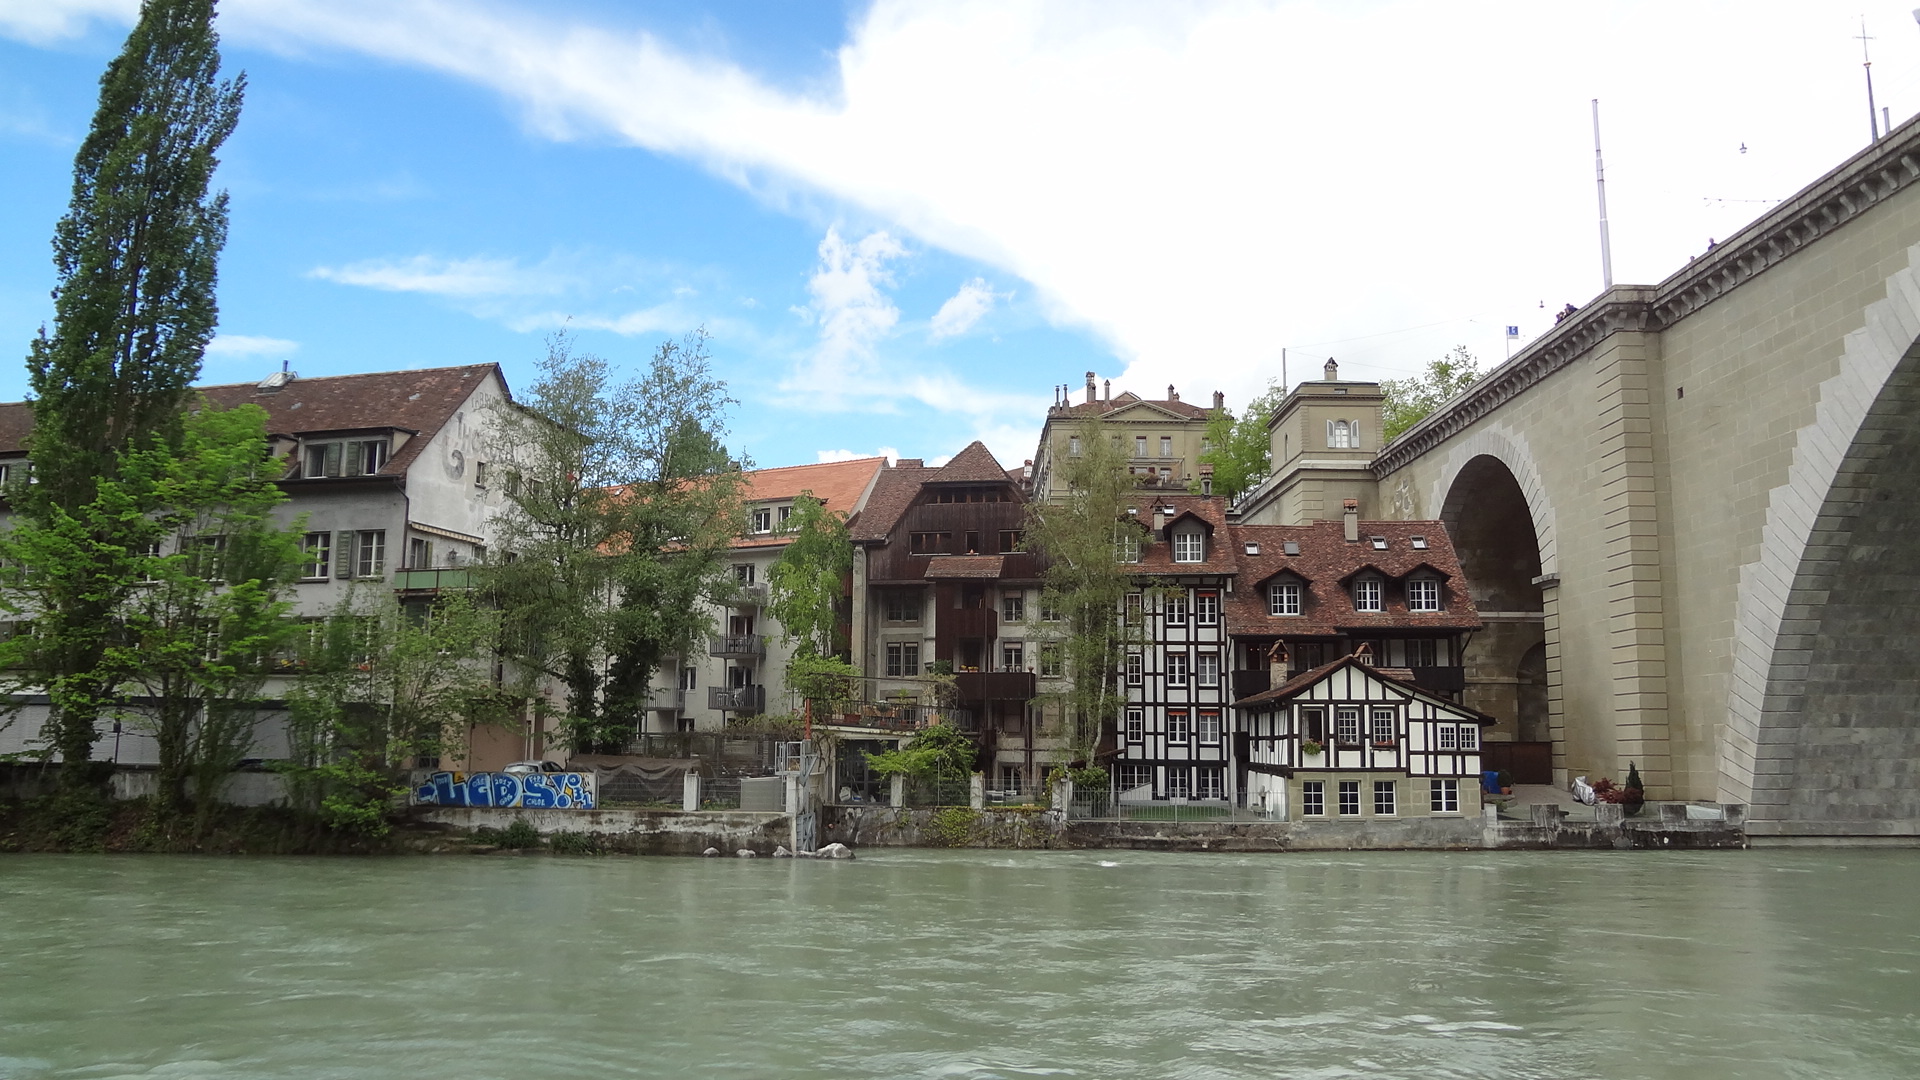 River Aare, Switzerland, Weepingredorger, Bern, 1920x1080 Full HD Desktop